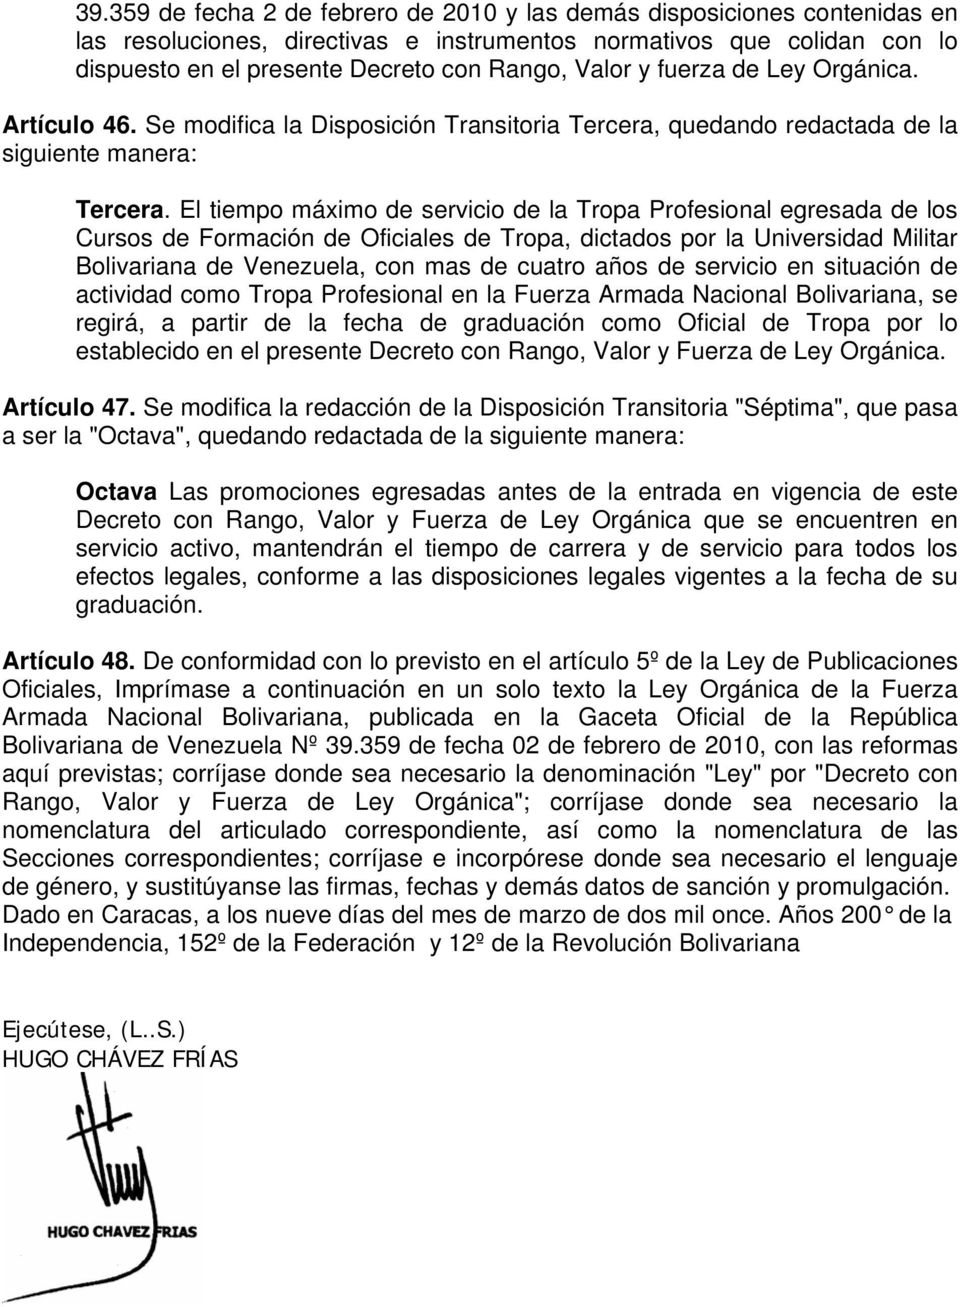 El tiempo máximo de servicio de la Tropa Profesional egresada de los Cursos de Formación de Oficiales de Tropa, dictados por la Universidad Militar Bolivariana de Venezuela, con mas de cuatro años de